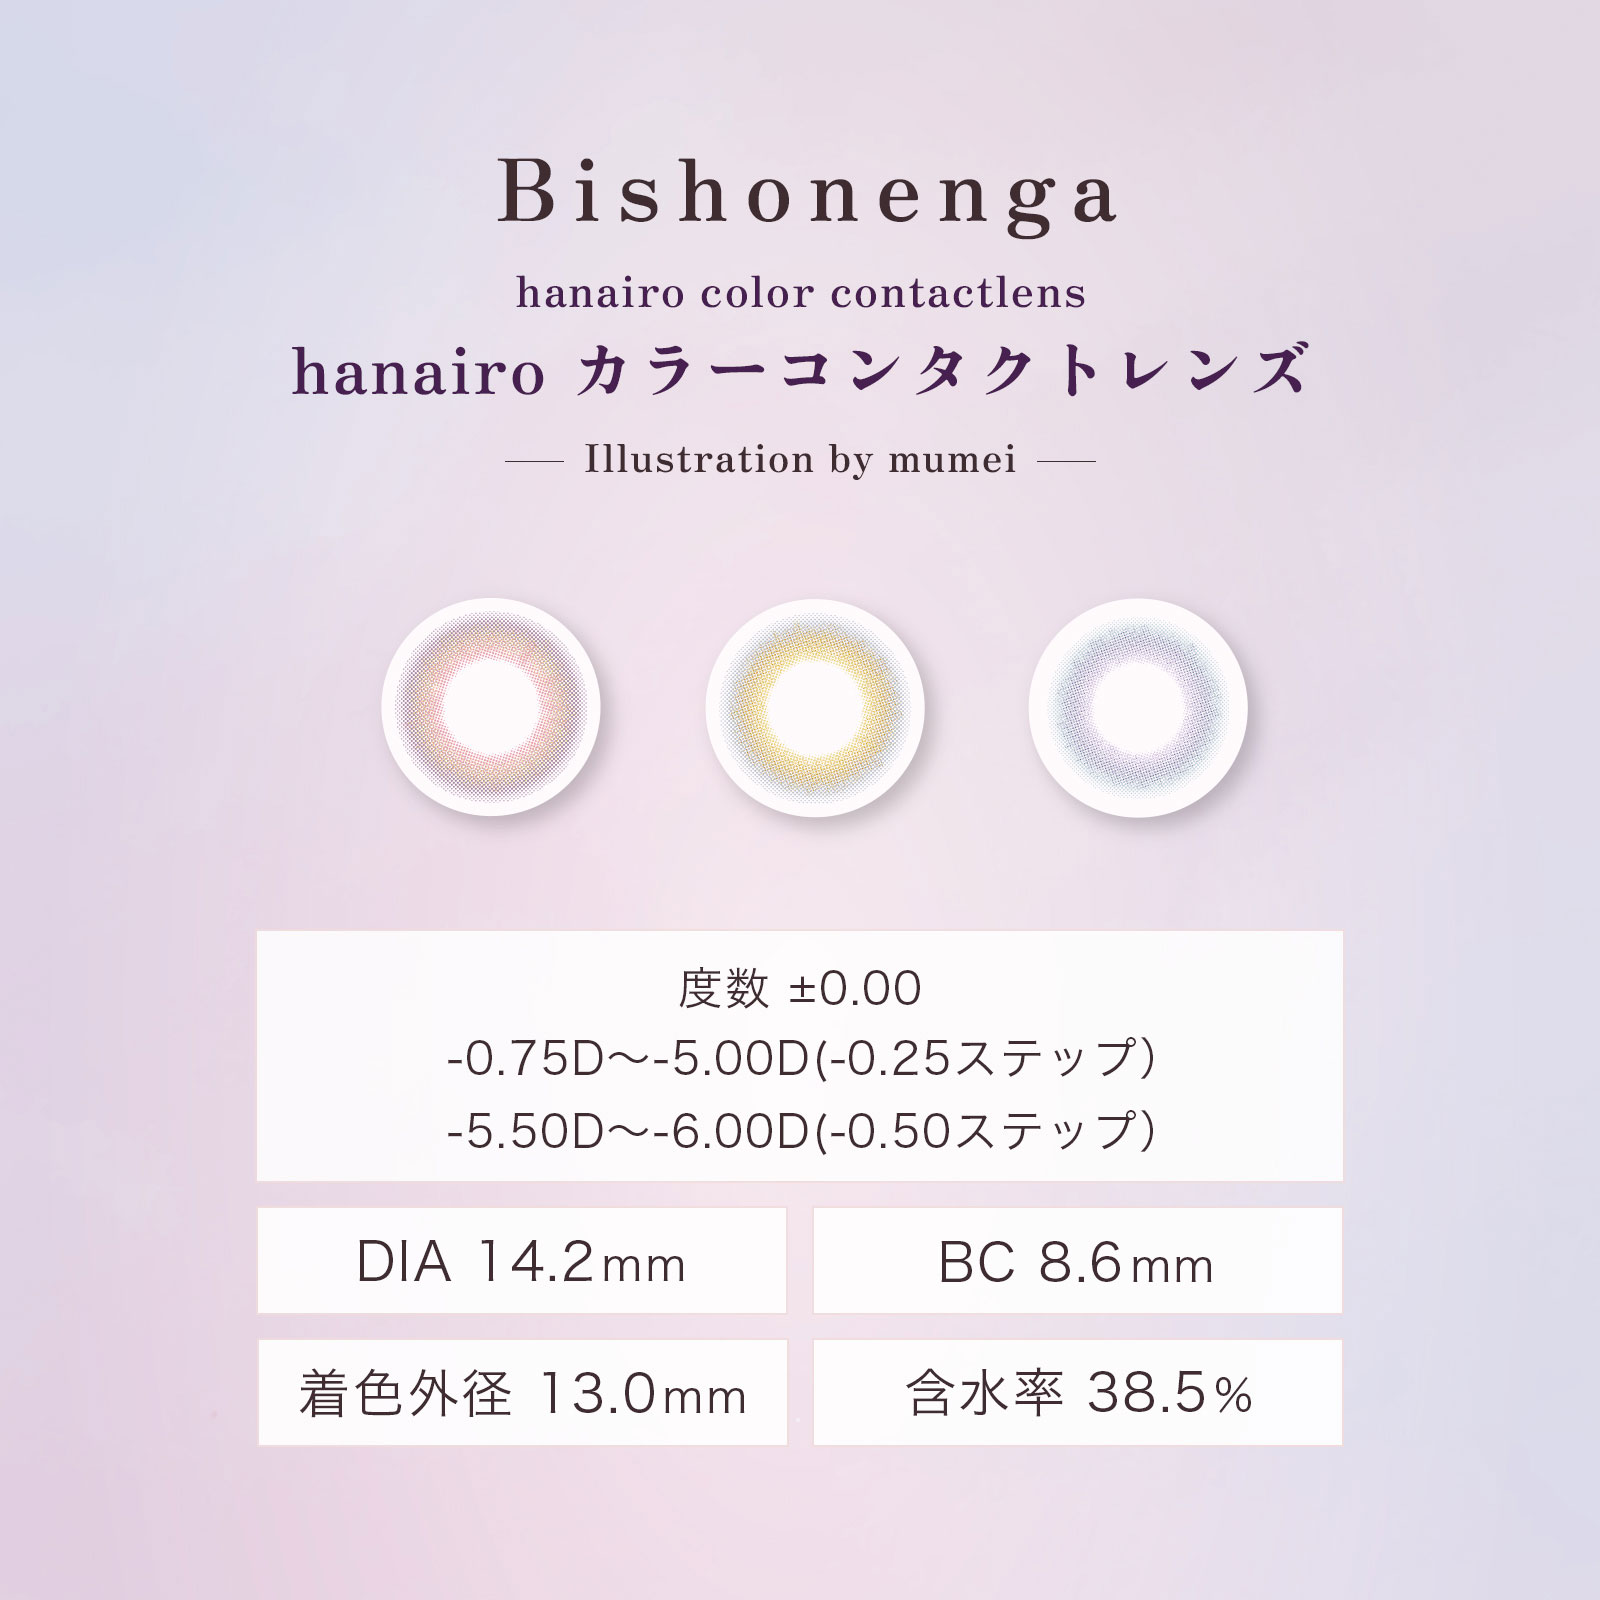 N ԍ(Bishonenga hanairo) Cibv